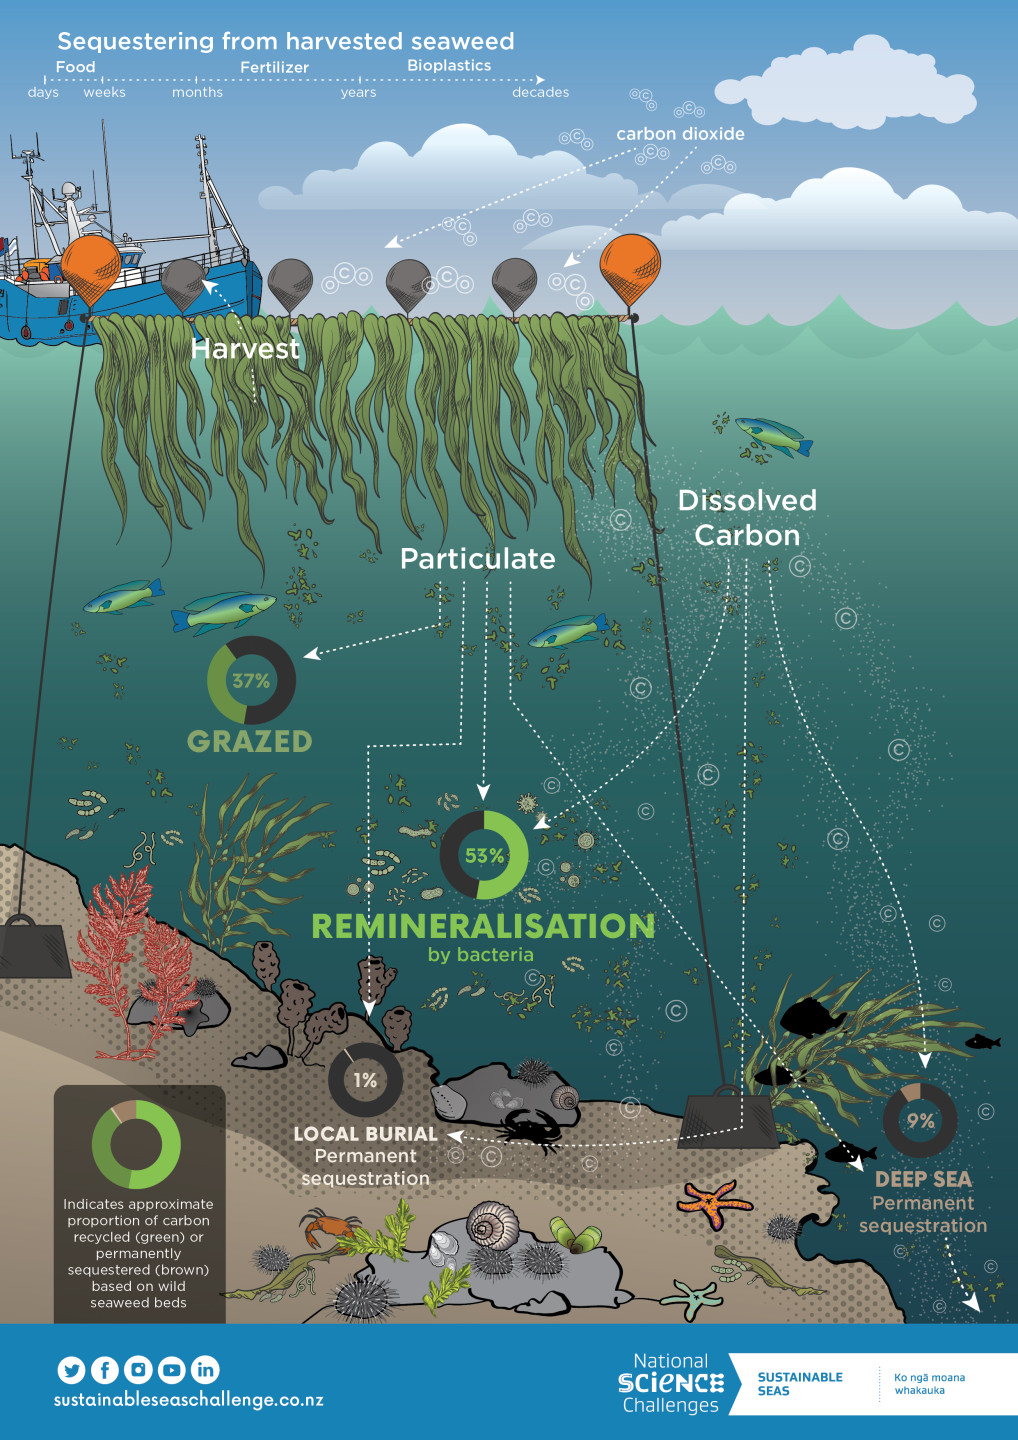 양식한 해조류를 심해에 가라앉히면 탄소를 반영구적으로 제거할 수 있습니다. 출처: https://www.sustainableseaschallenge.co.nz/tools-and-resources/carbon-cycle-seaweed-farms/, CC BY-NC-ND 4.0.